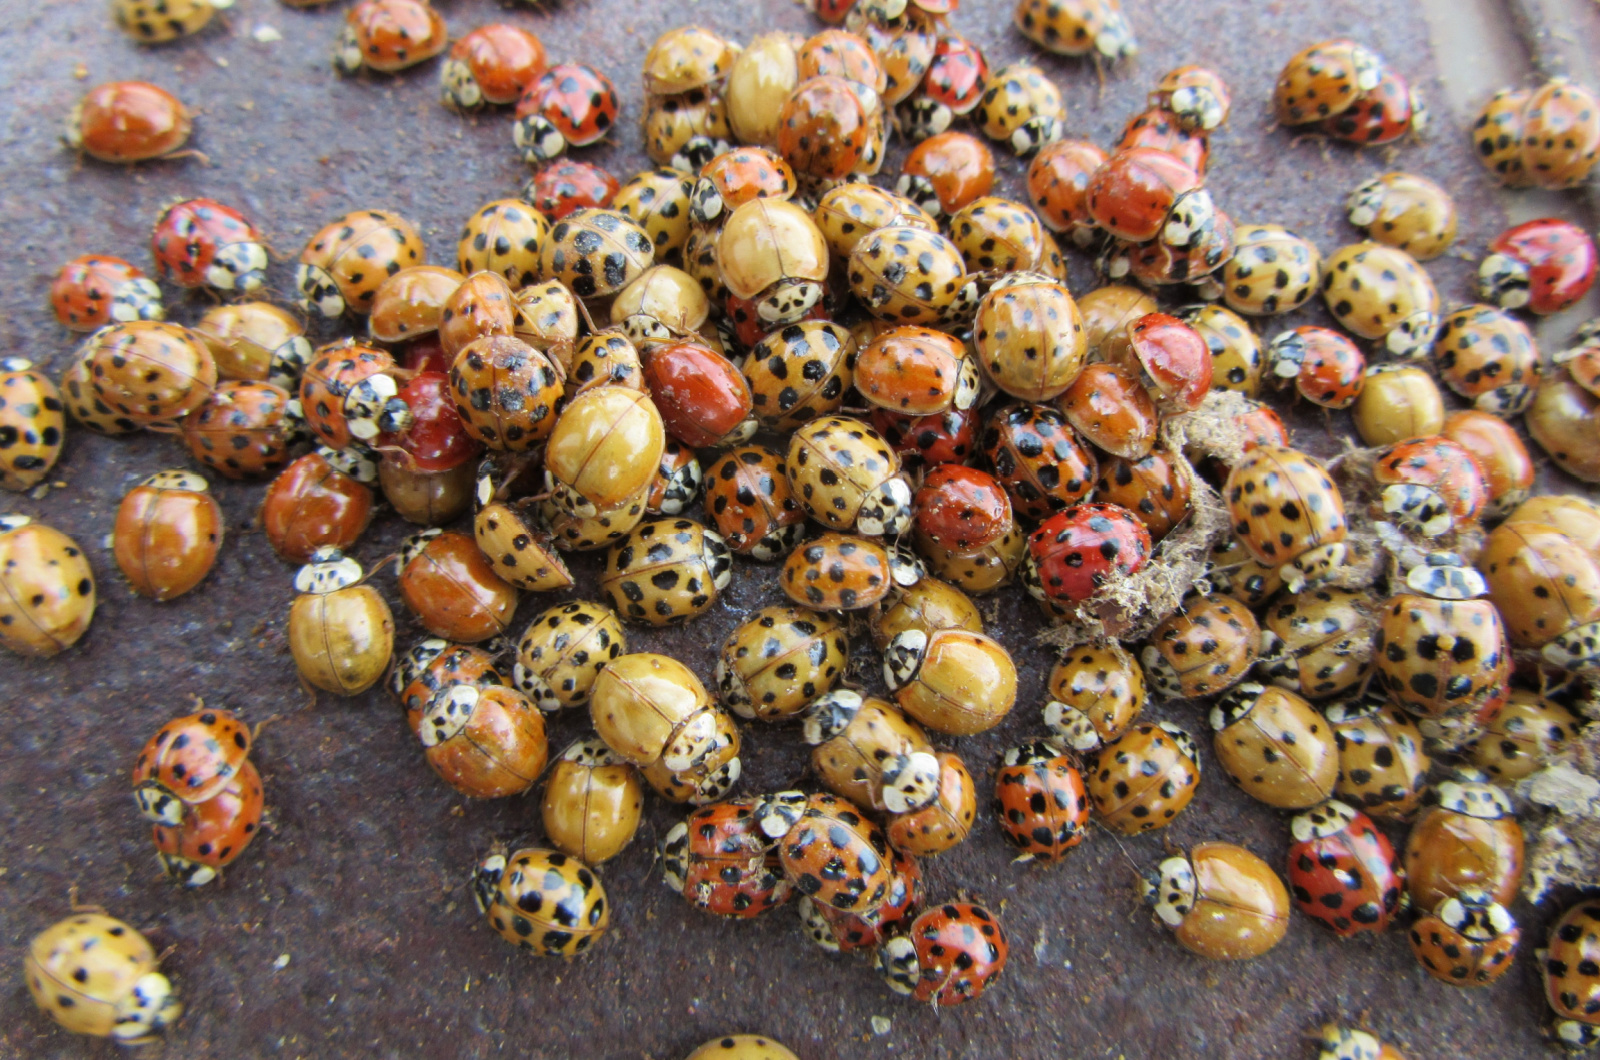 many ladybugs